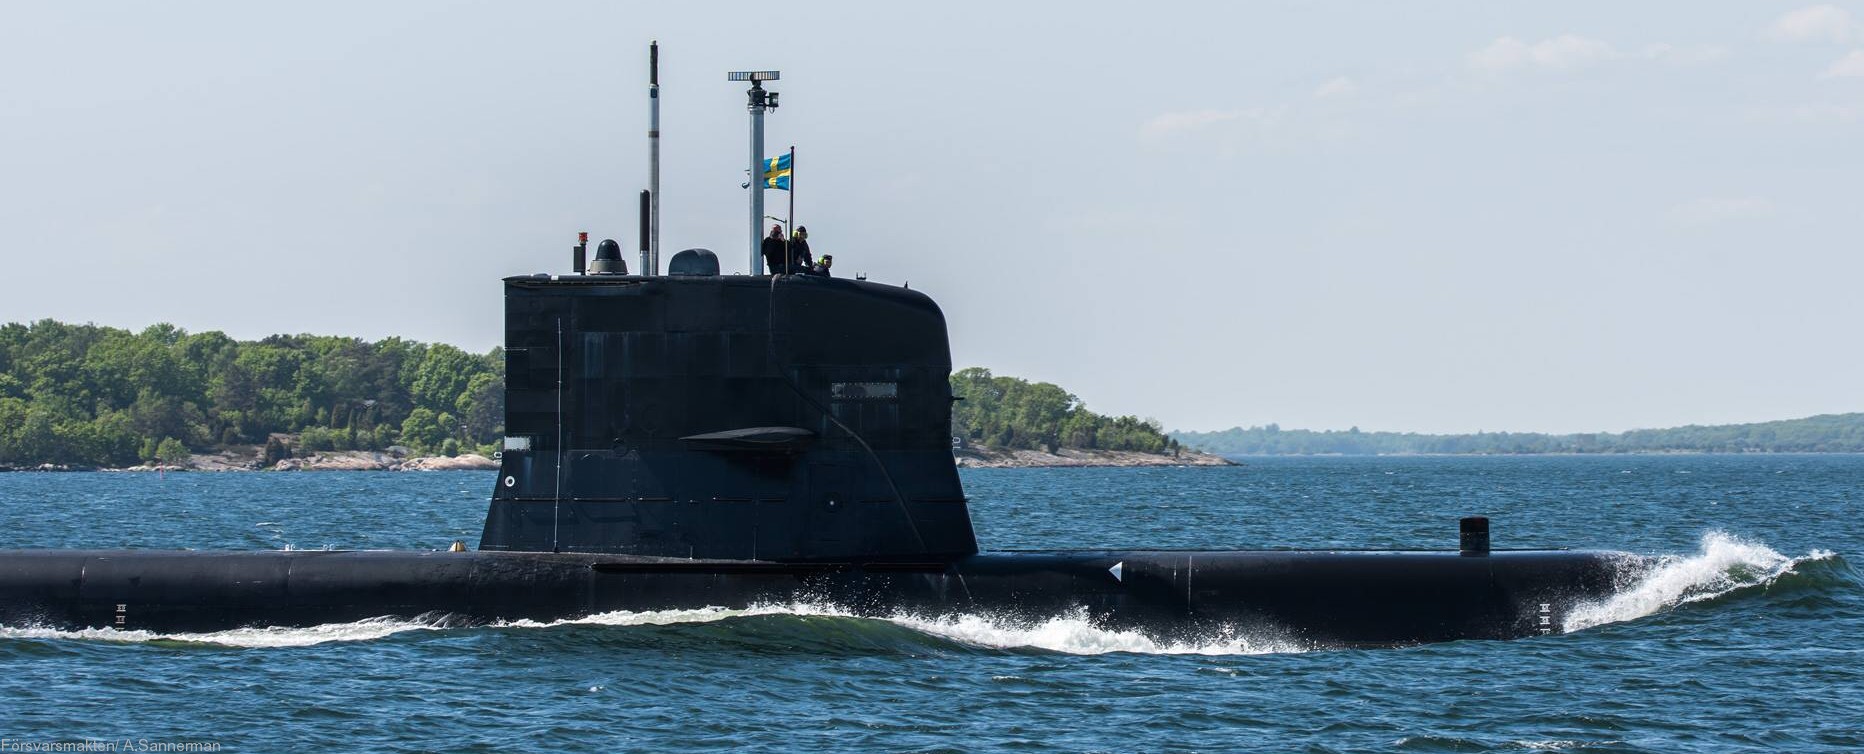 hswms hms sodermanland söd vastergotland class submarine ssk swedish navy svenska marinen försvarsmakten kockums 19